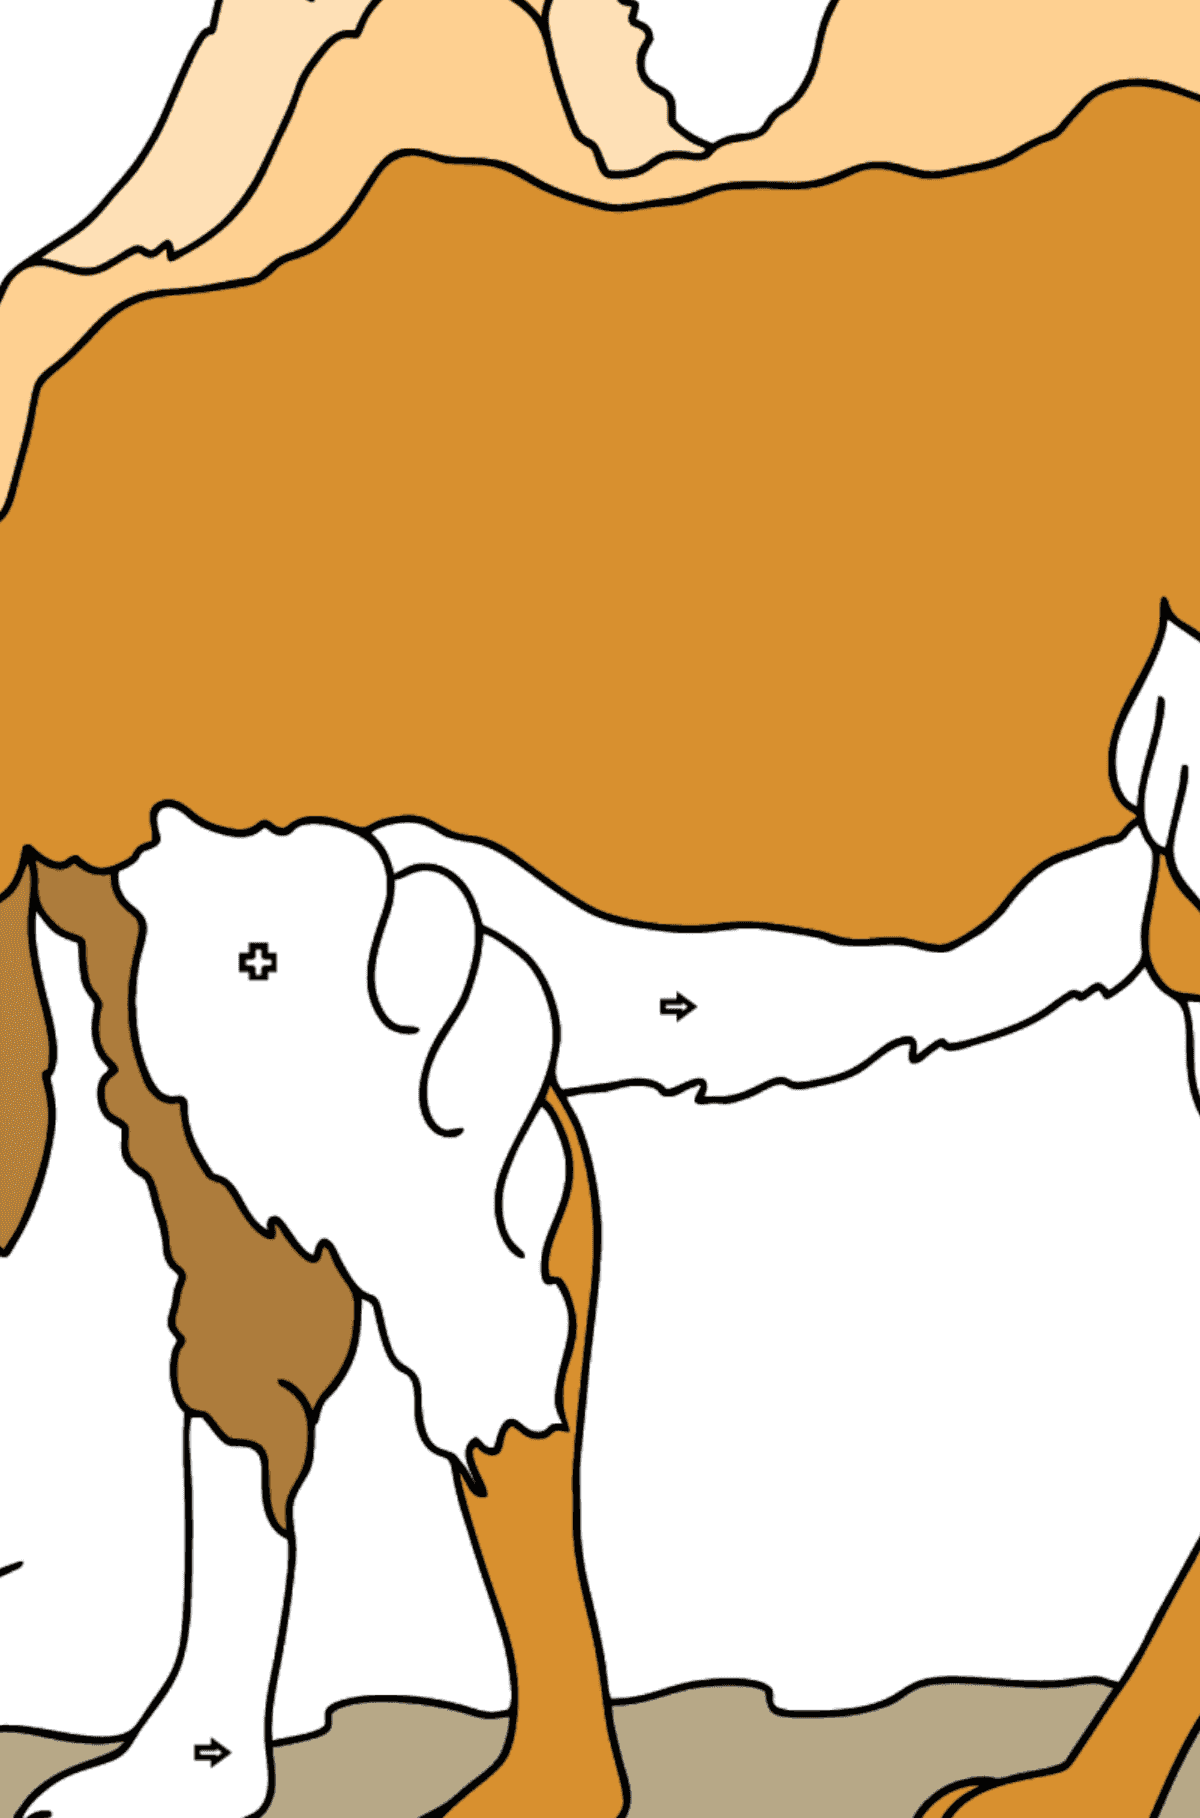 Dibujo para Colorear - Un Camello está Mirando a lo Lejos - Colorear por Formas Geométricas para Niños